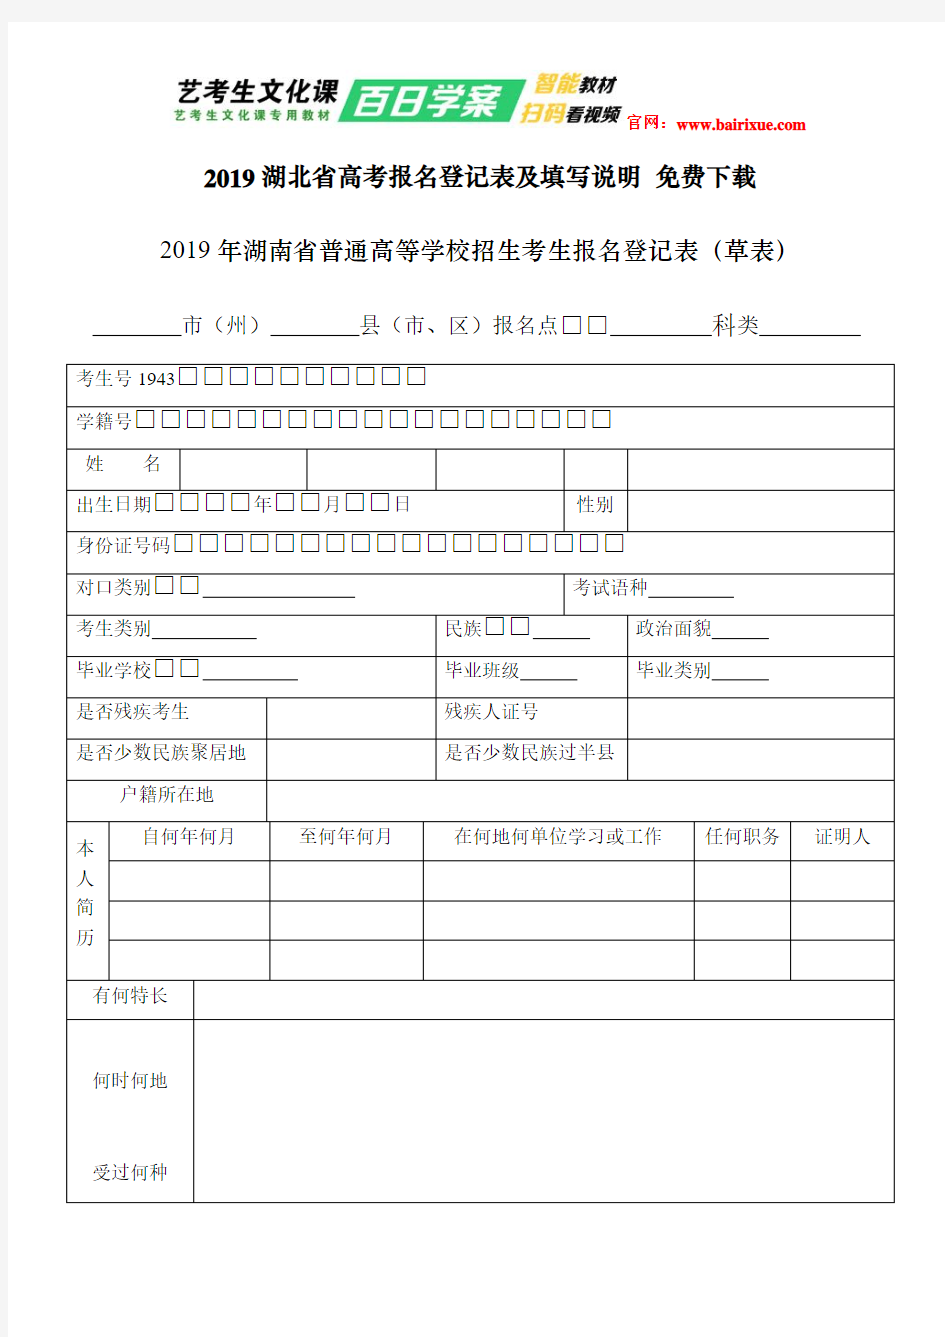 2019湖北省高考报名登记表及填写说明 免费下载